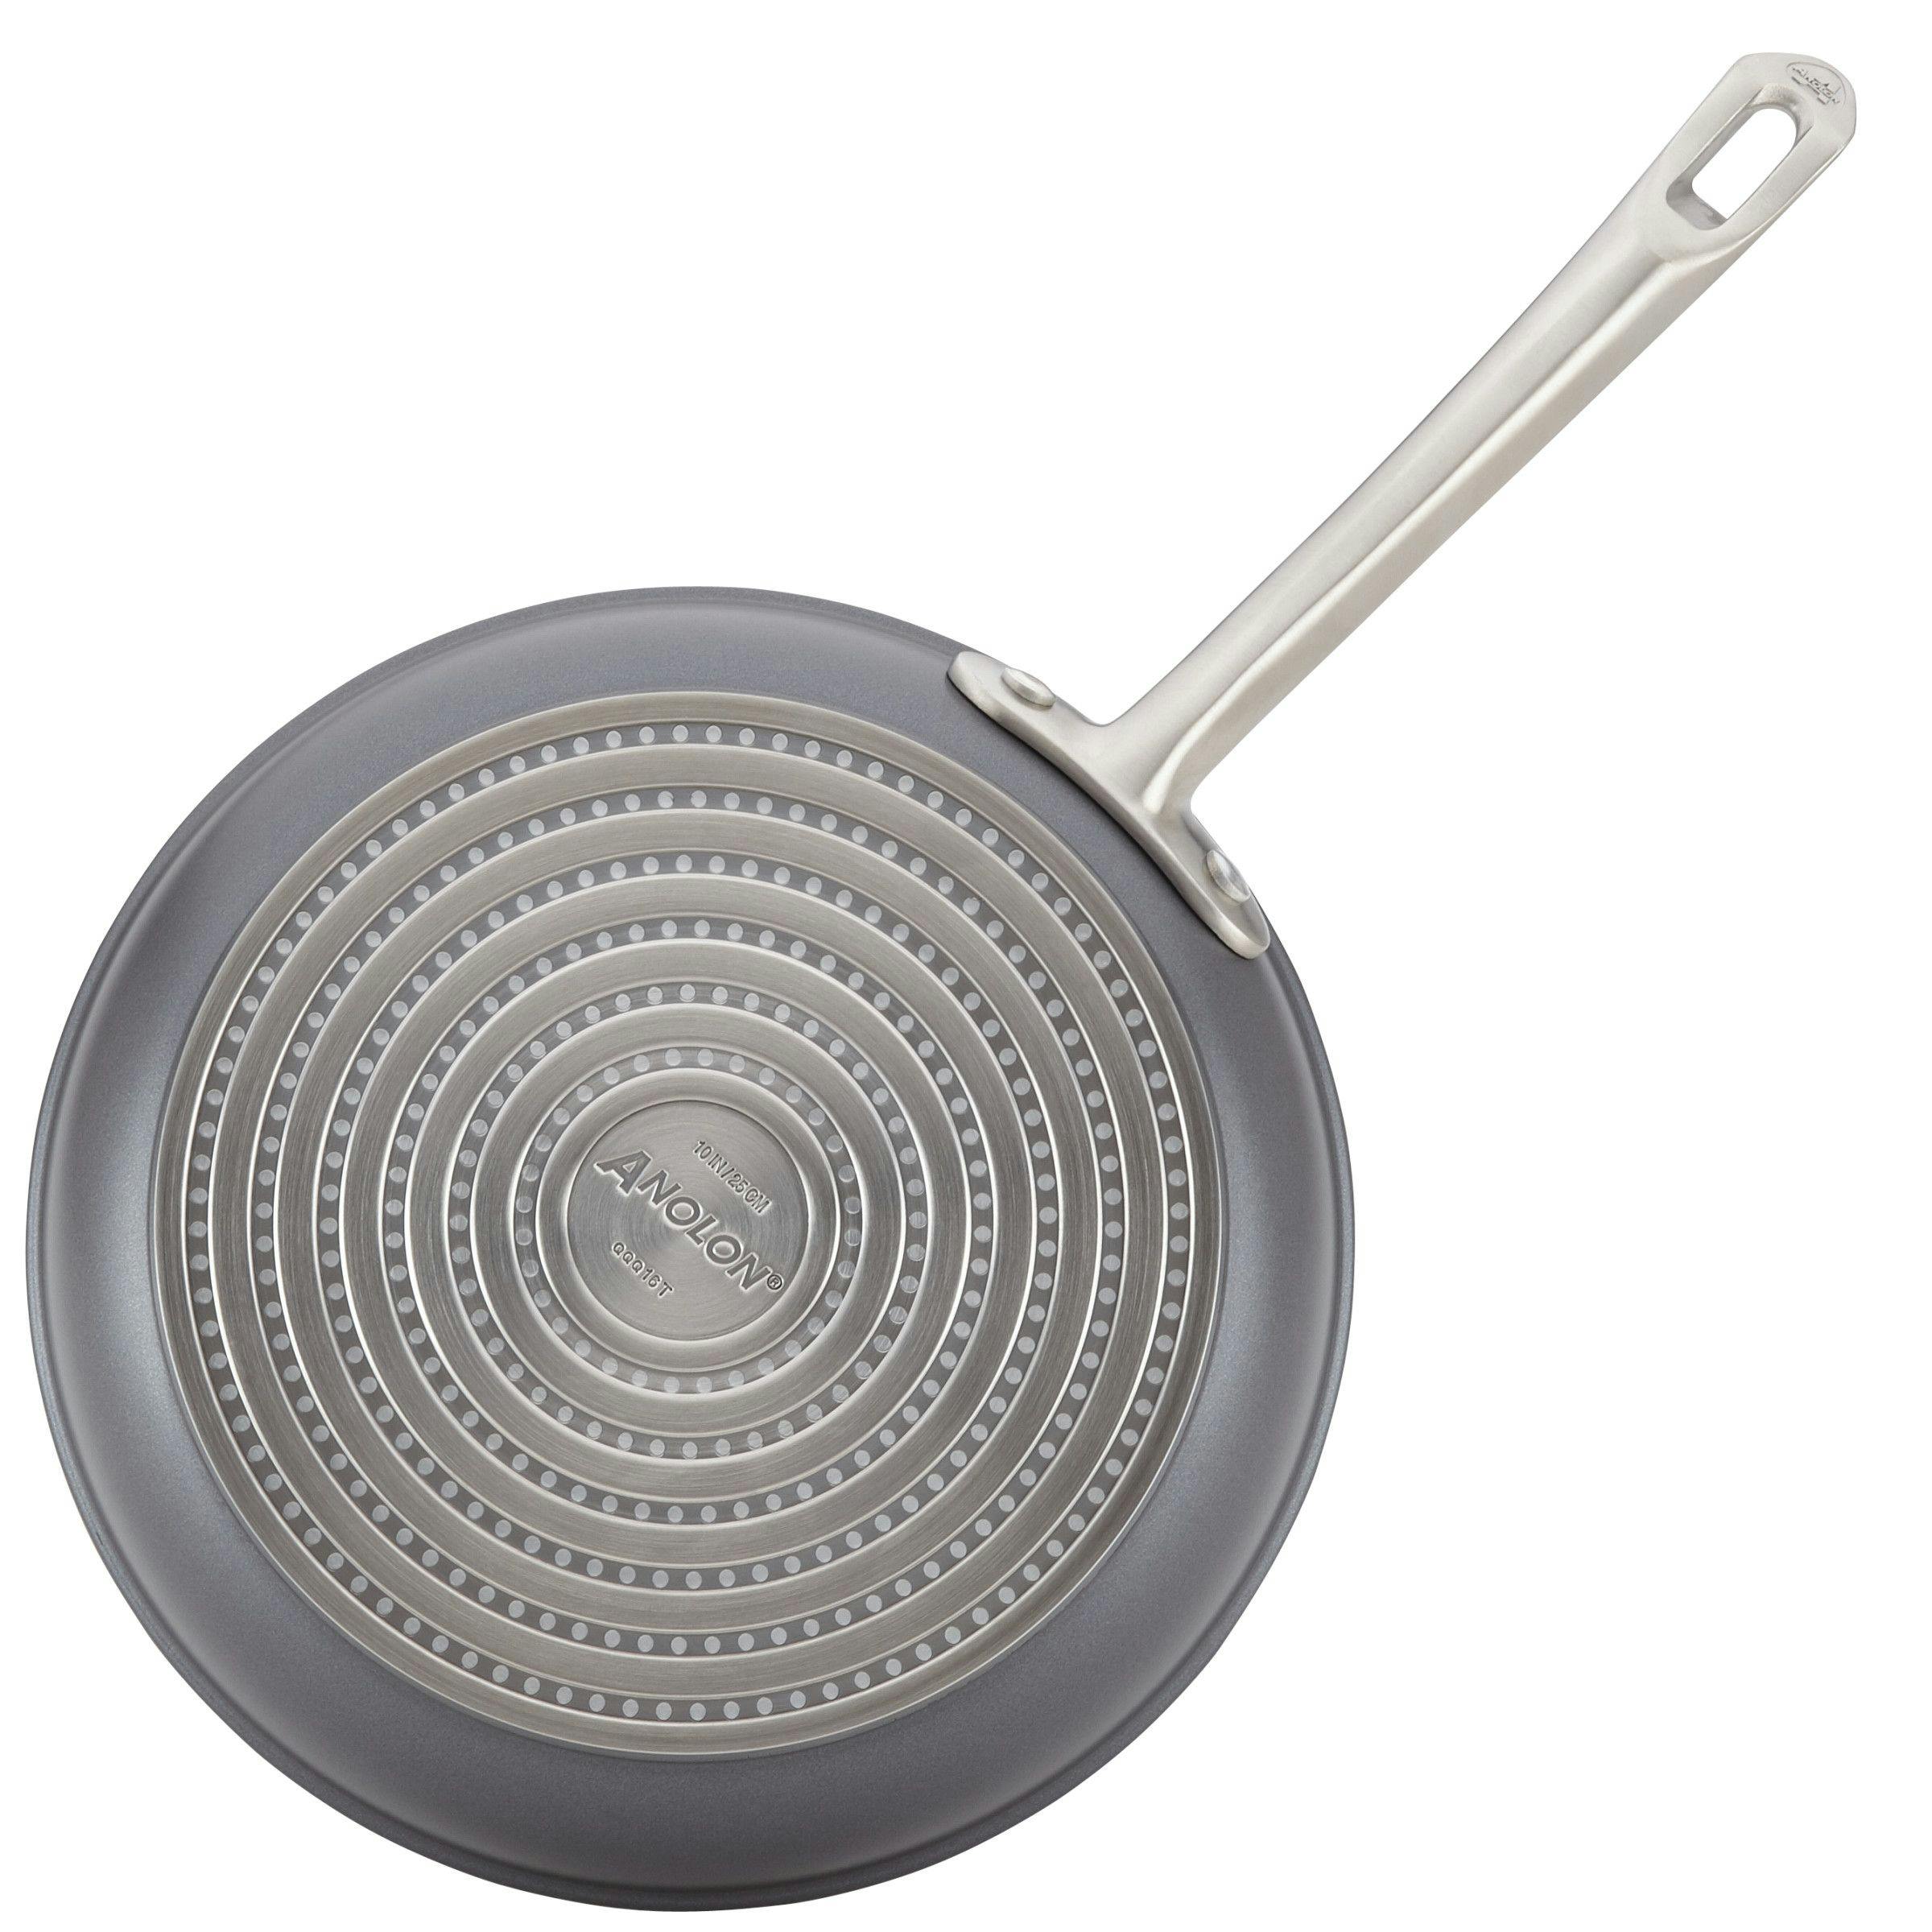 Anolon X Hybrid Nonstick Cookware Induction Pots and Pans Set, 10 Piece